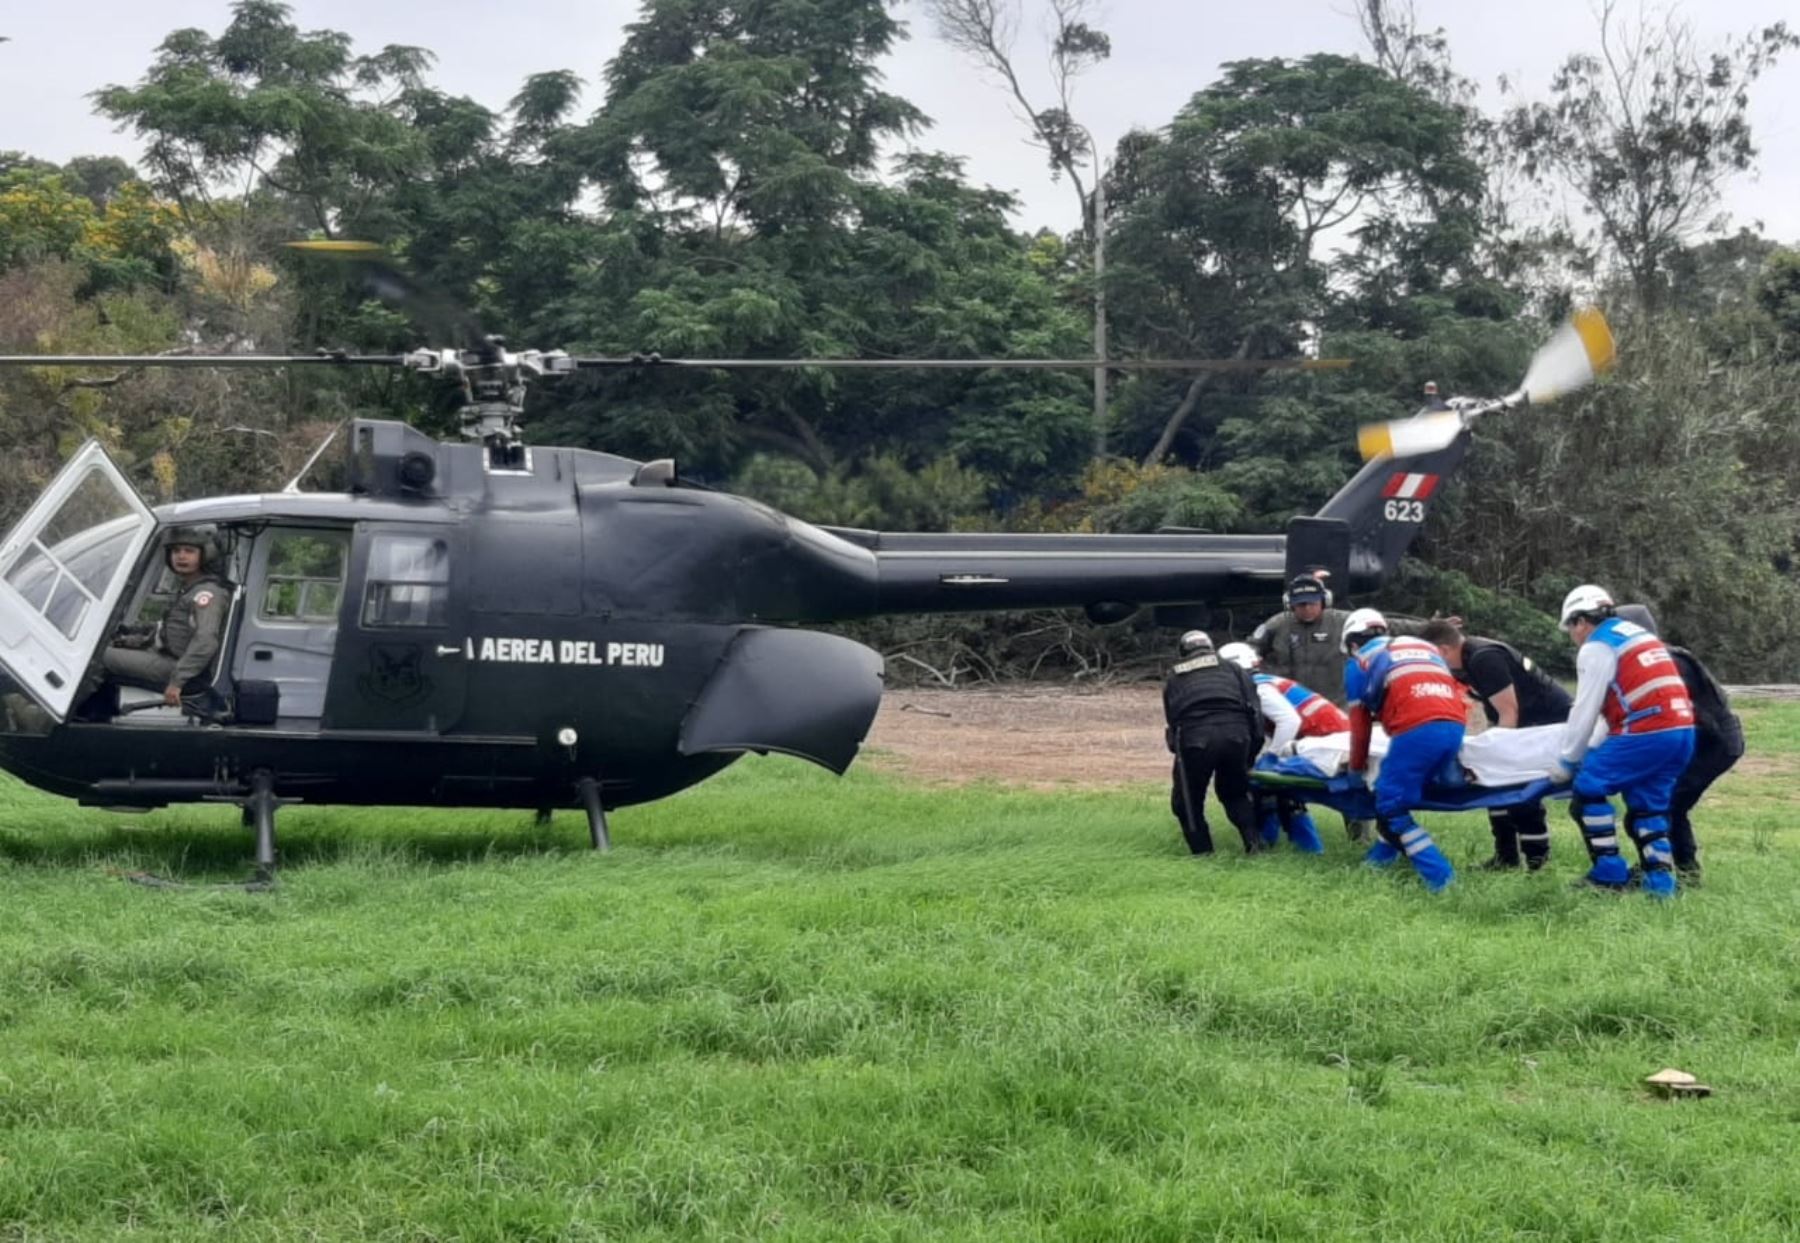 El helicóptero de la FAP realiza evacuación aérea de heridos. Foto: Twitter